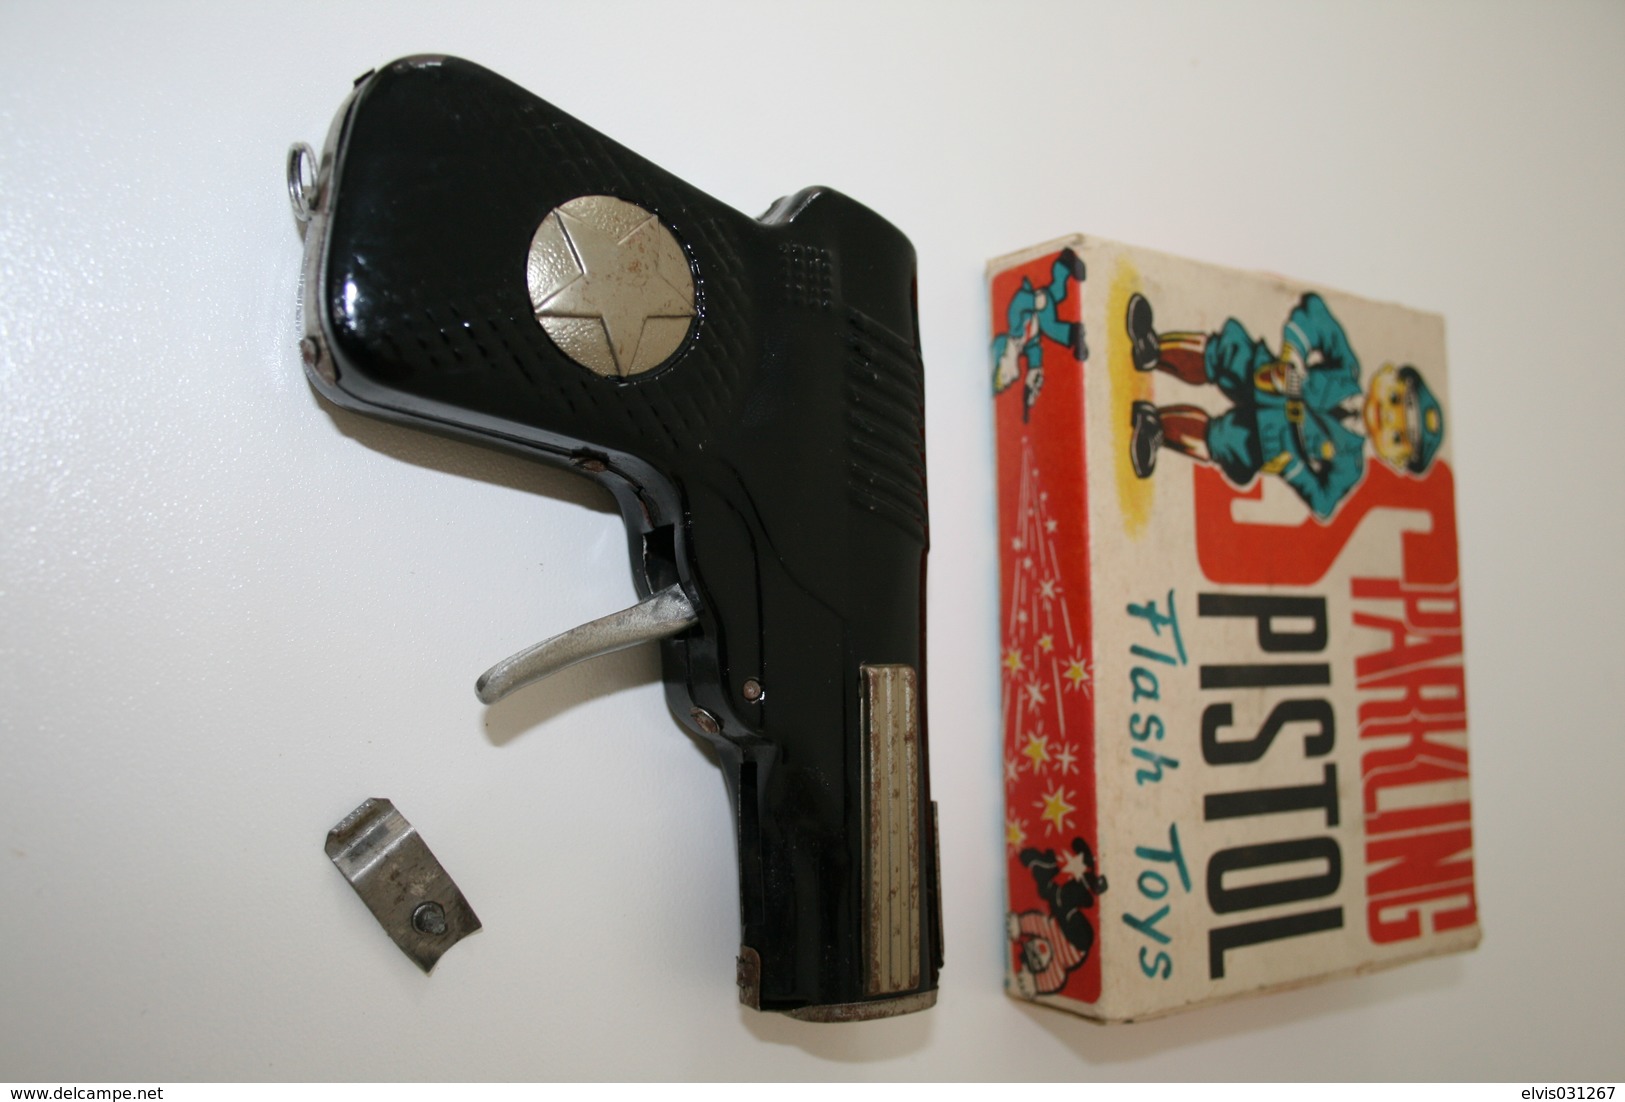 Vintage TOY GUN : MODERN TOYS - L=12cm - 1950-60s - Keywords : Cap Gun - Cork Gun - Rifle - Revolver - Pistol - Tin - Armas De Colección